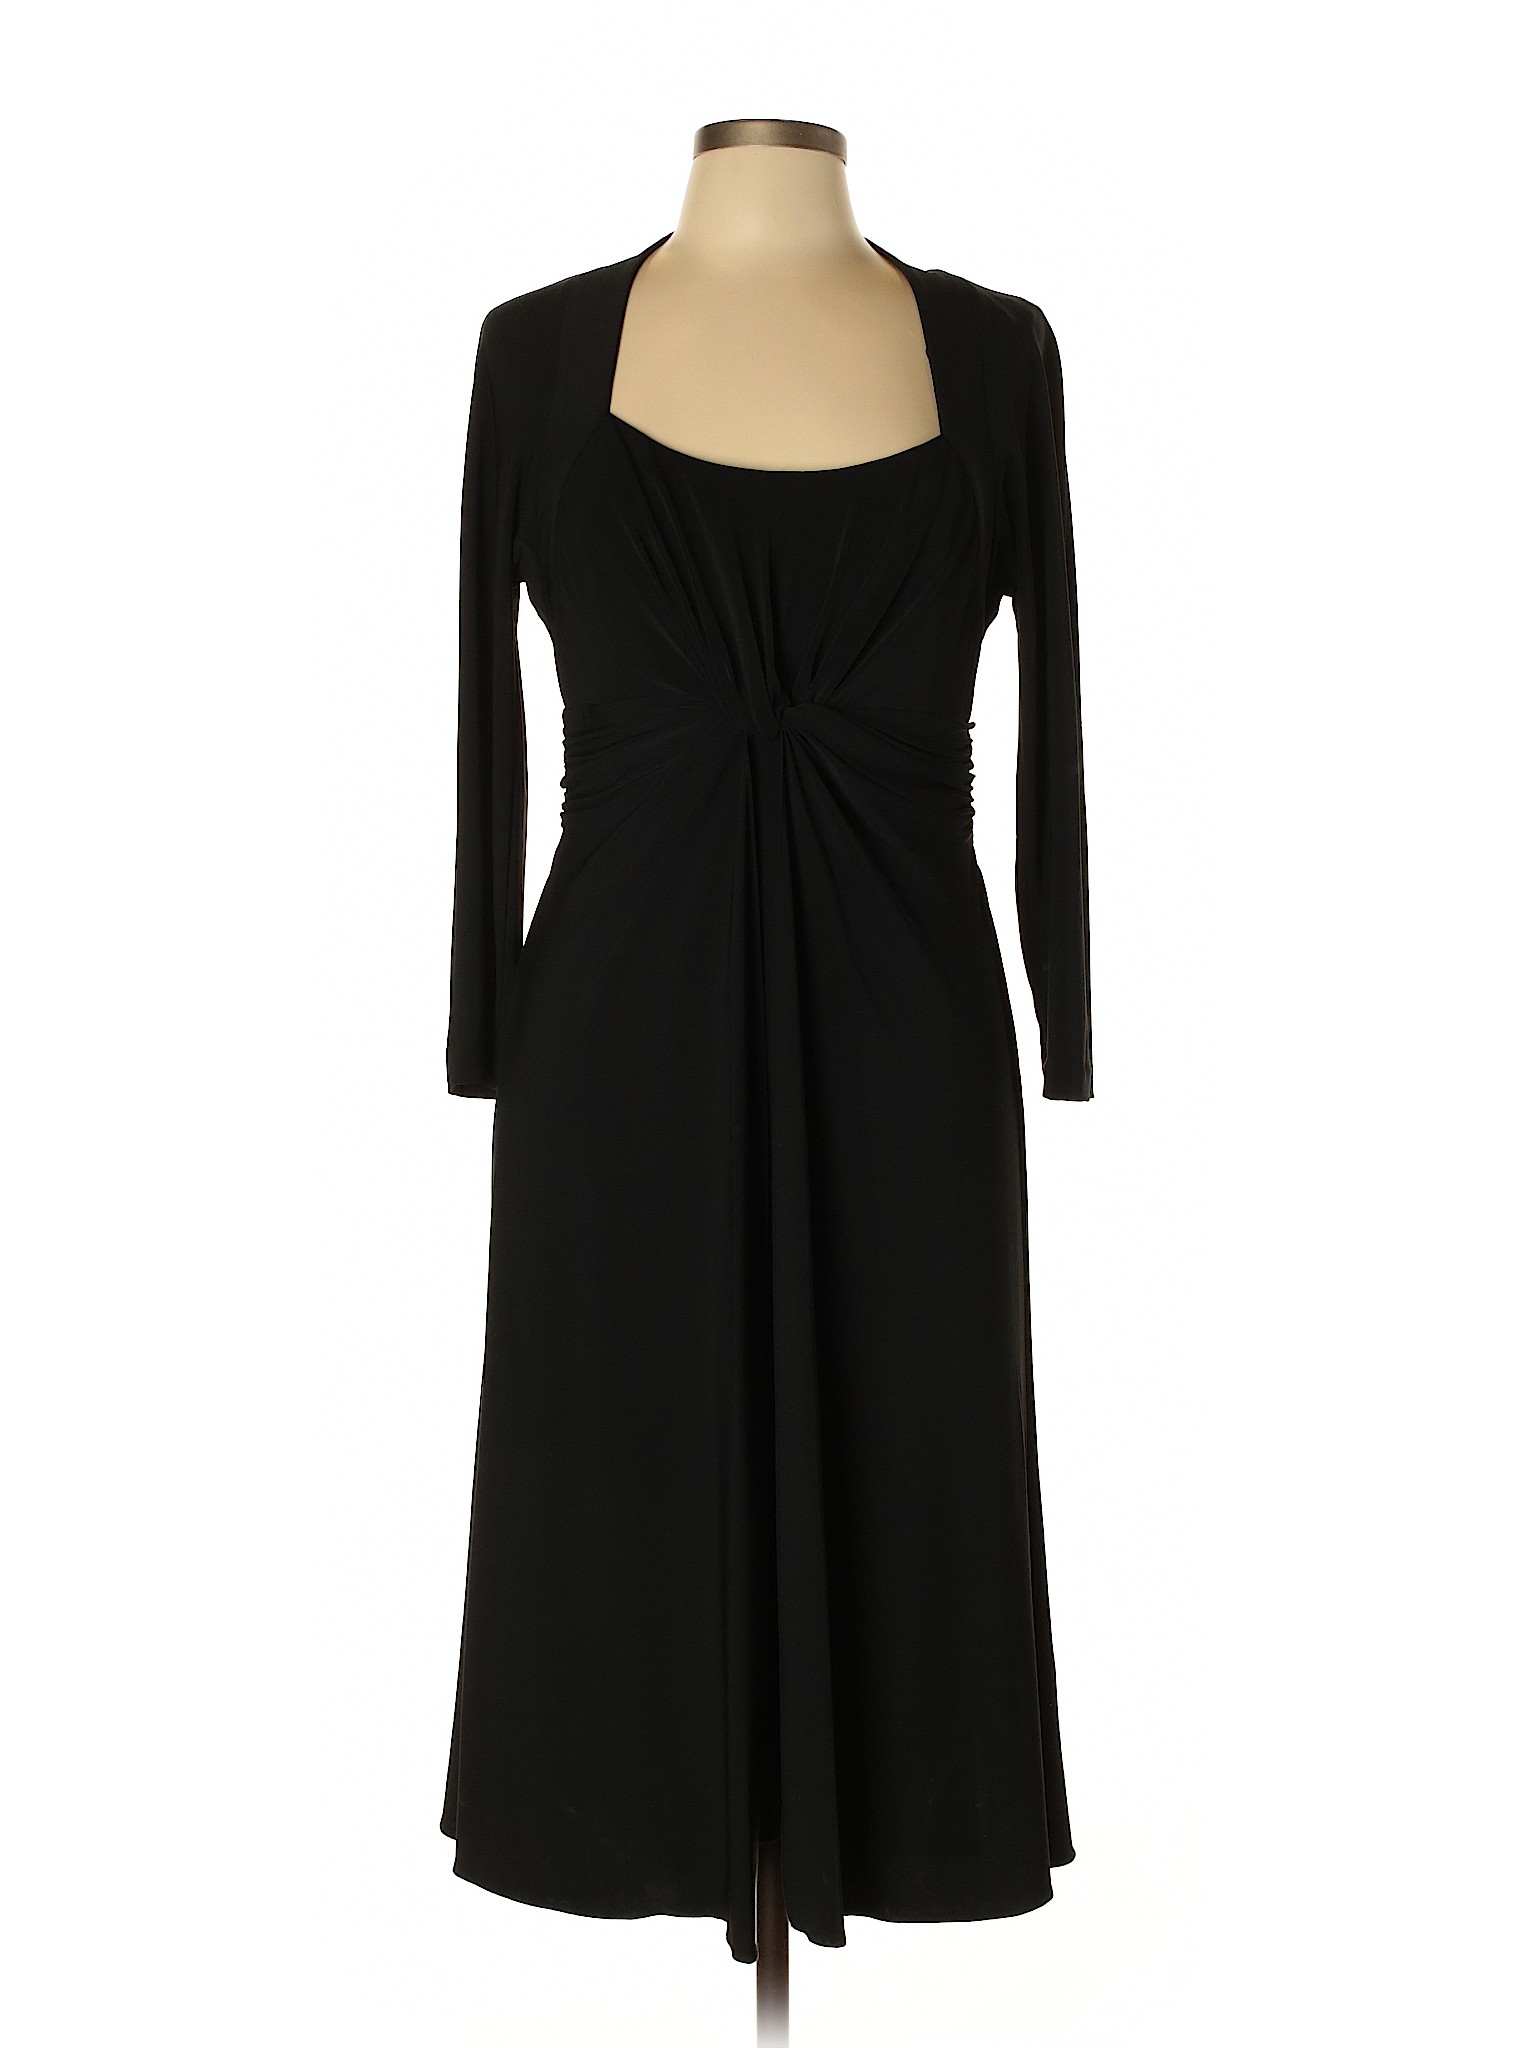 Jones New York Women Black Casual Dress 12 | eBay